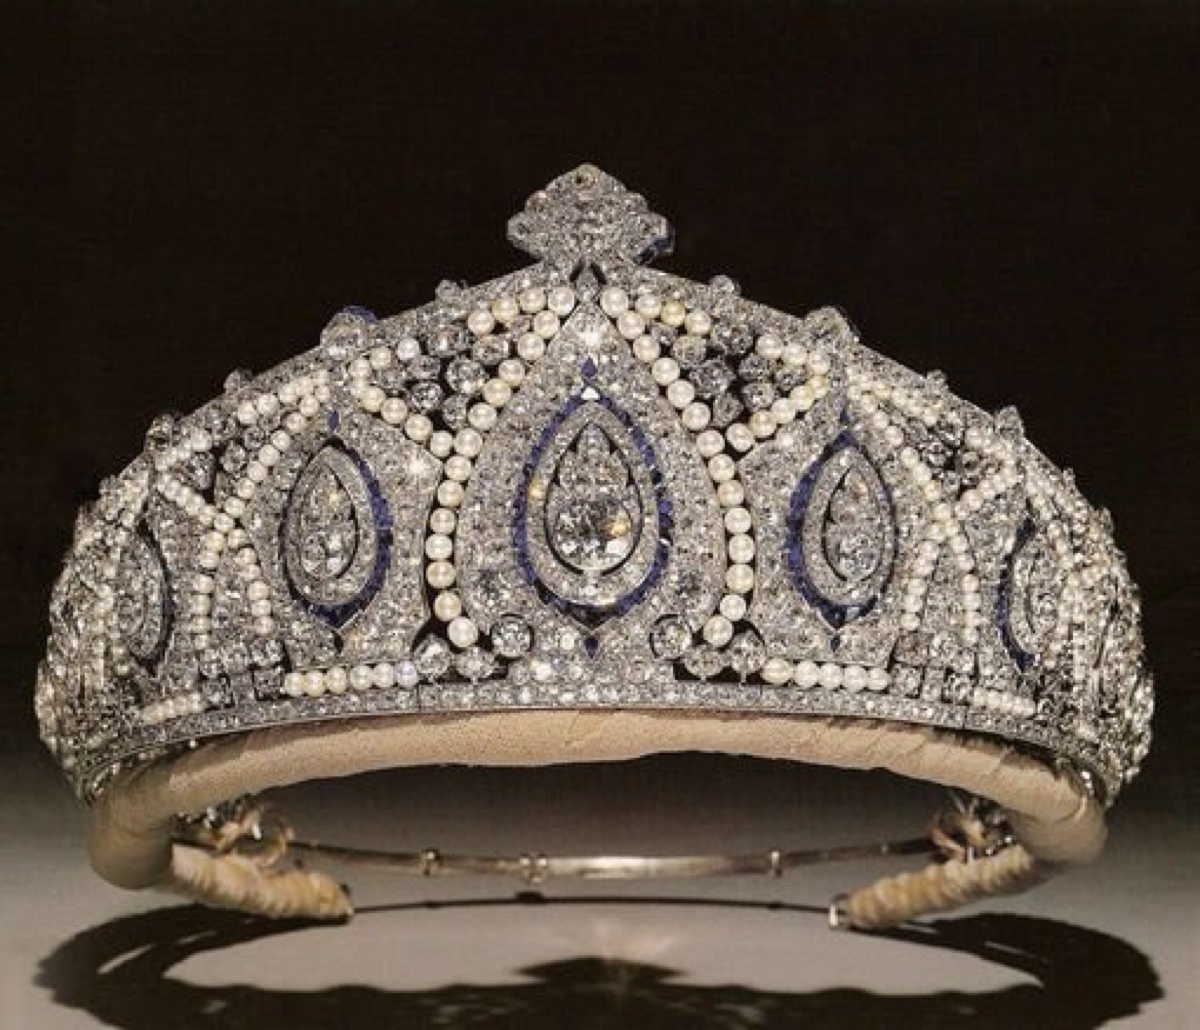 世界上最美的公主王冠图片